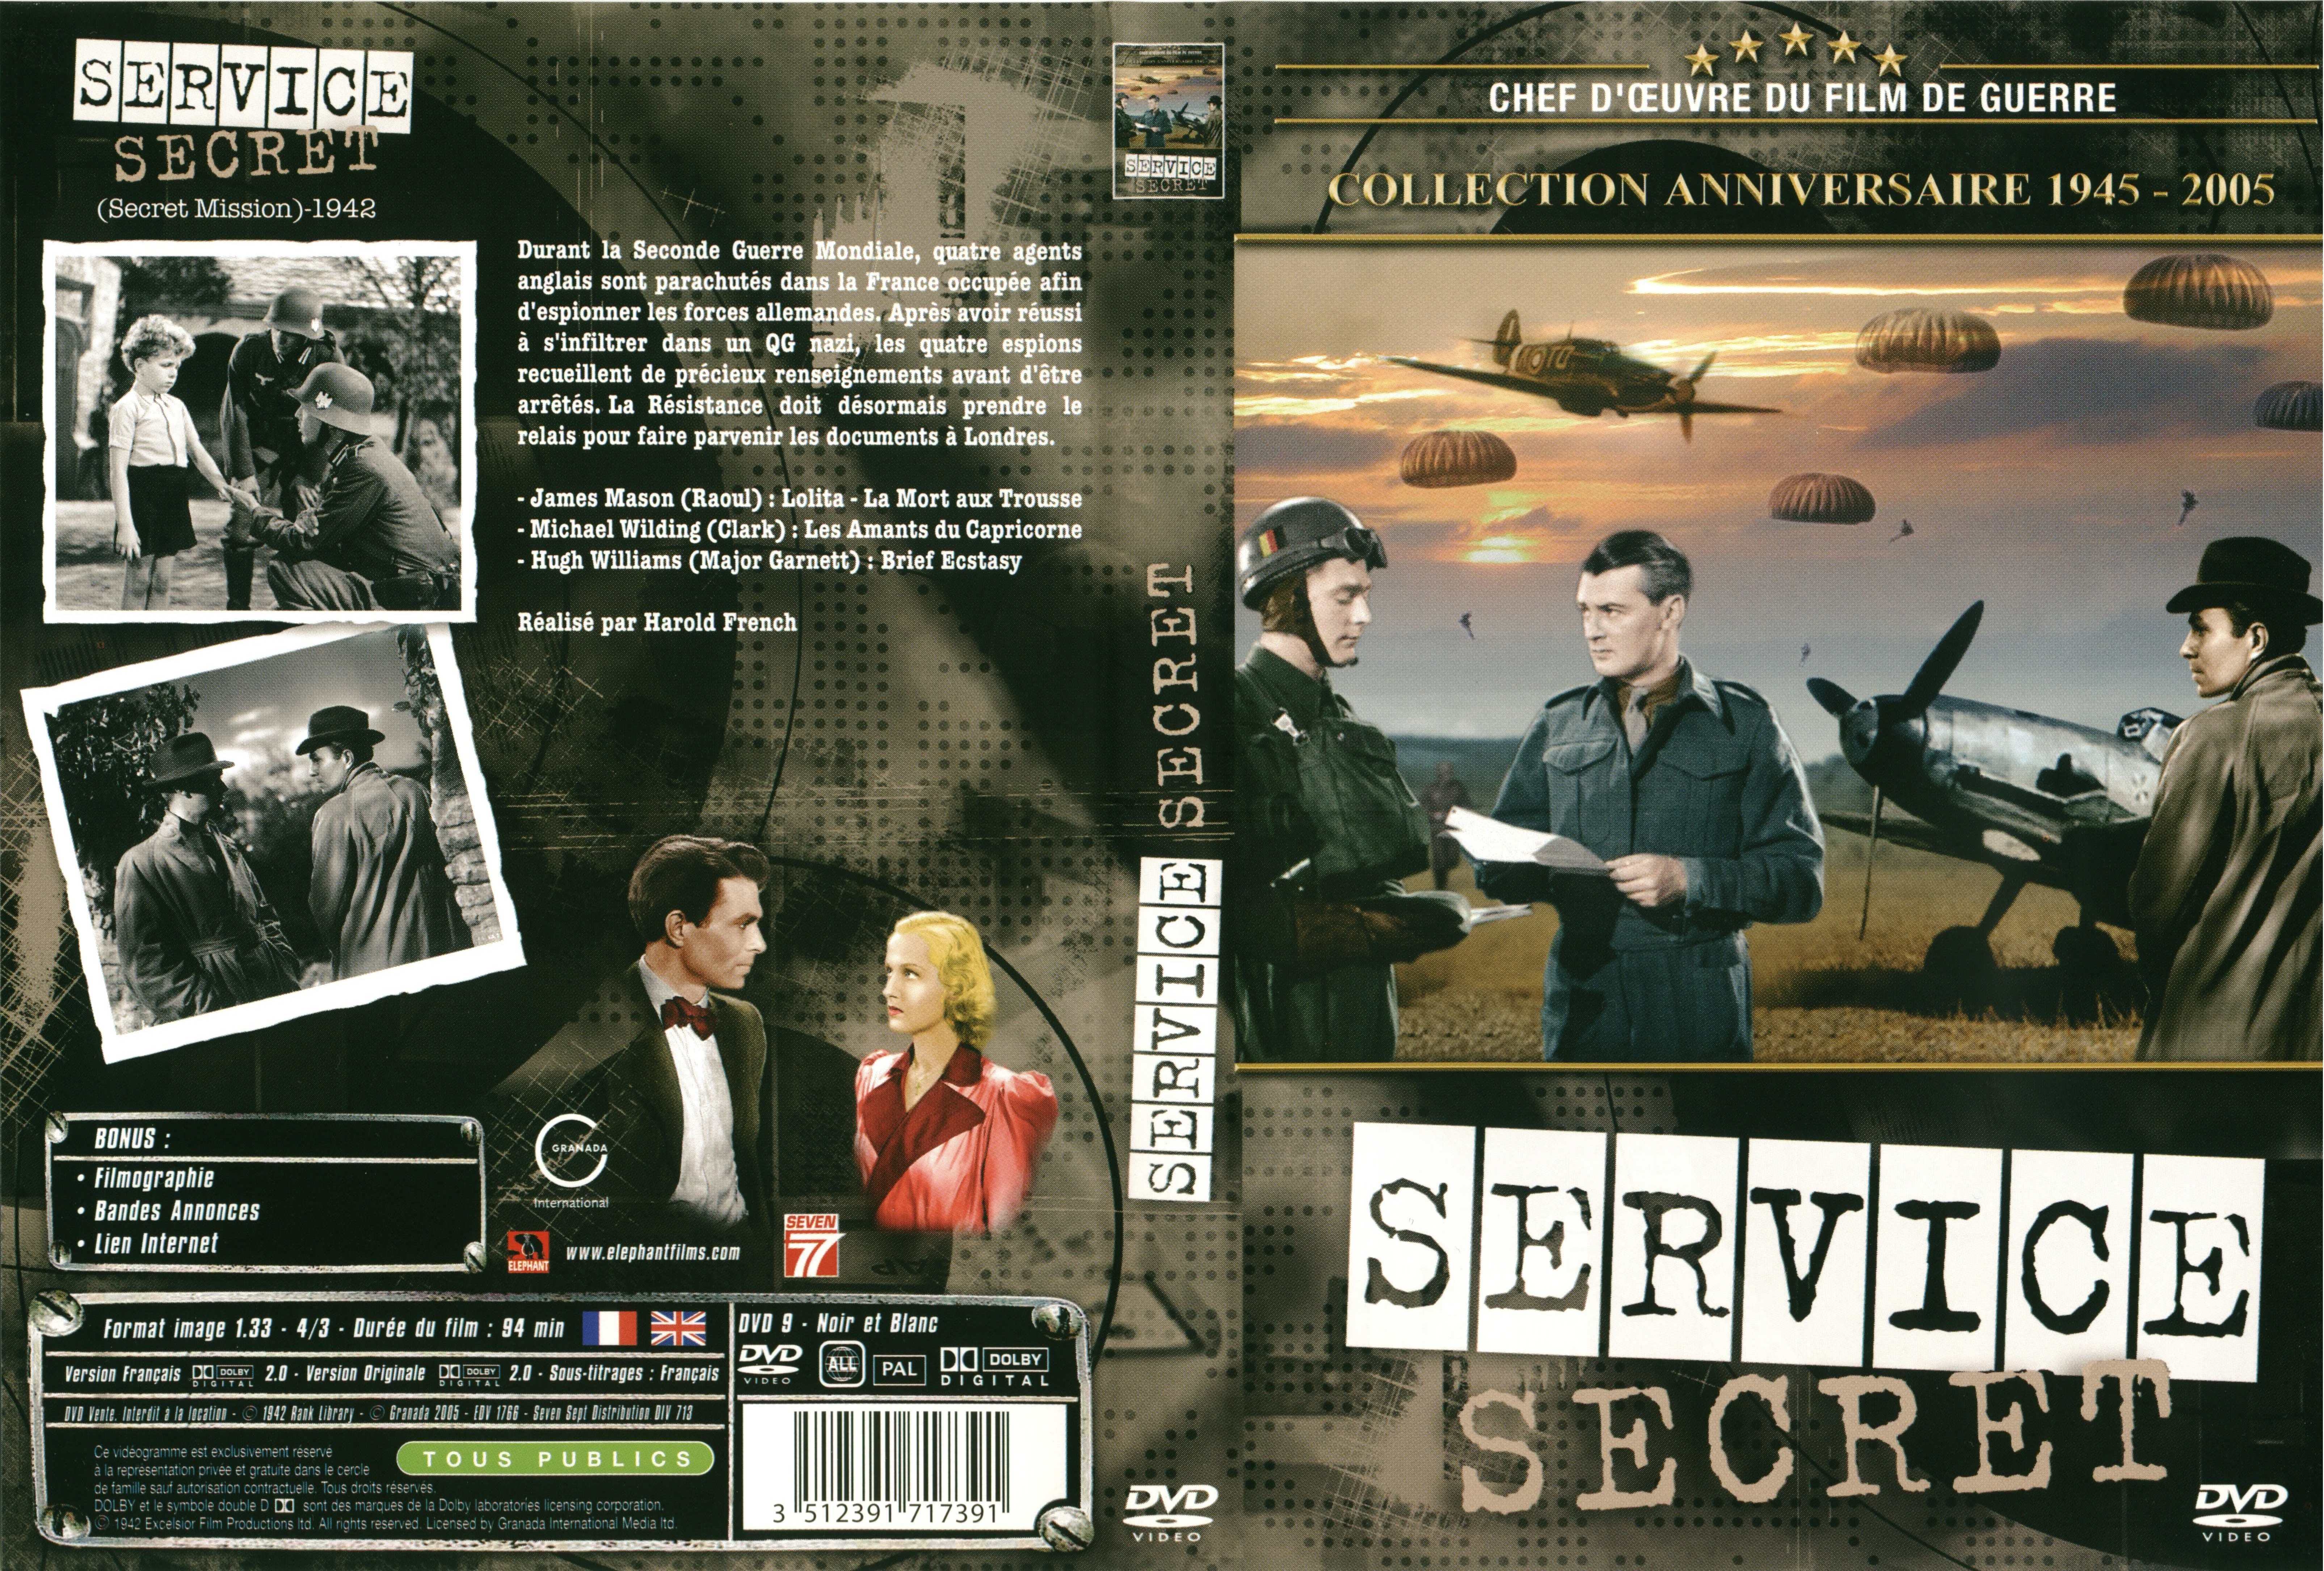 Jaquette DVD Service secret